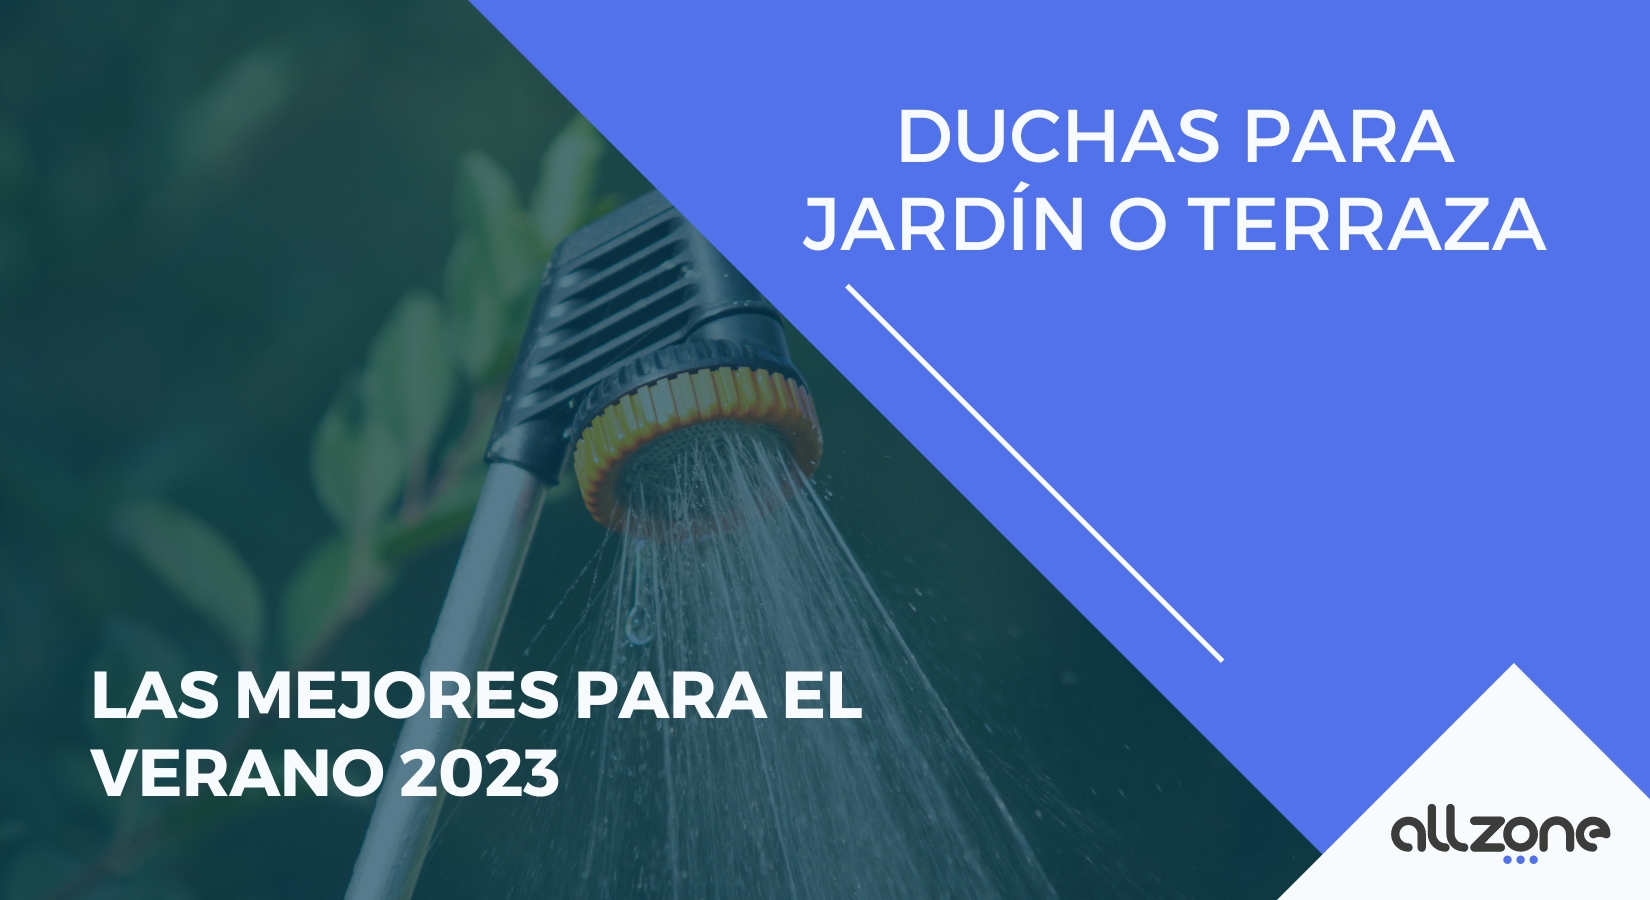 duchas-para-jardin-o-terraza-las-mejores-2023